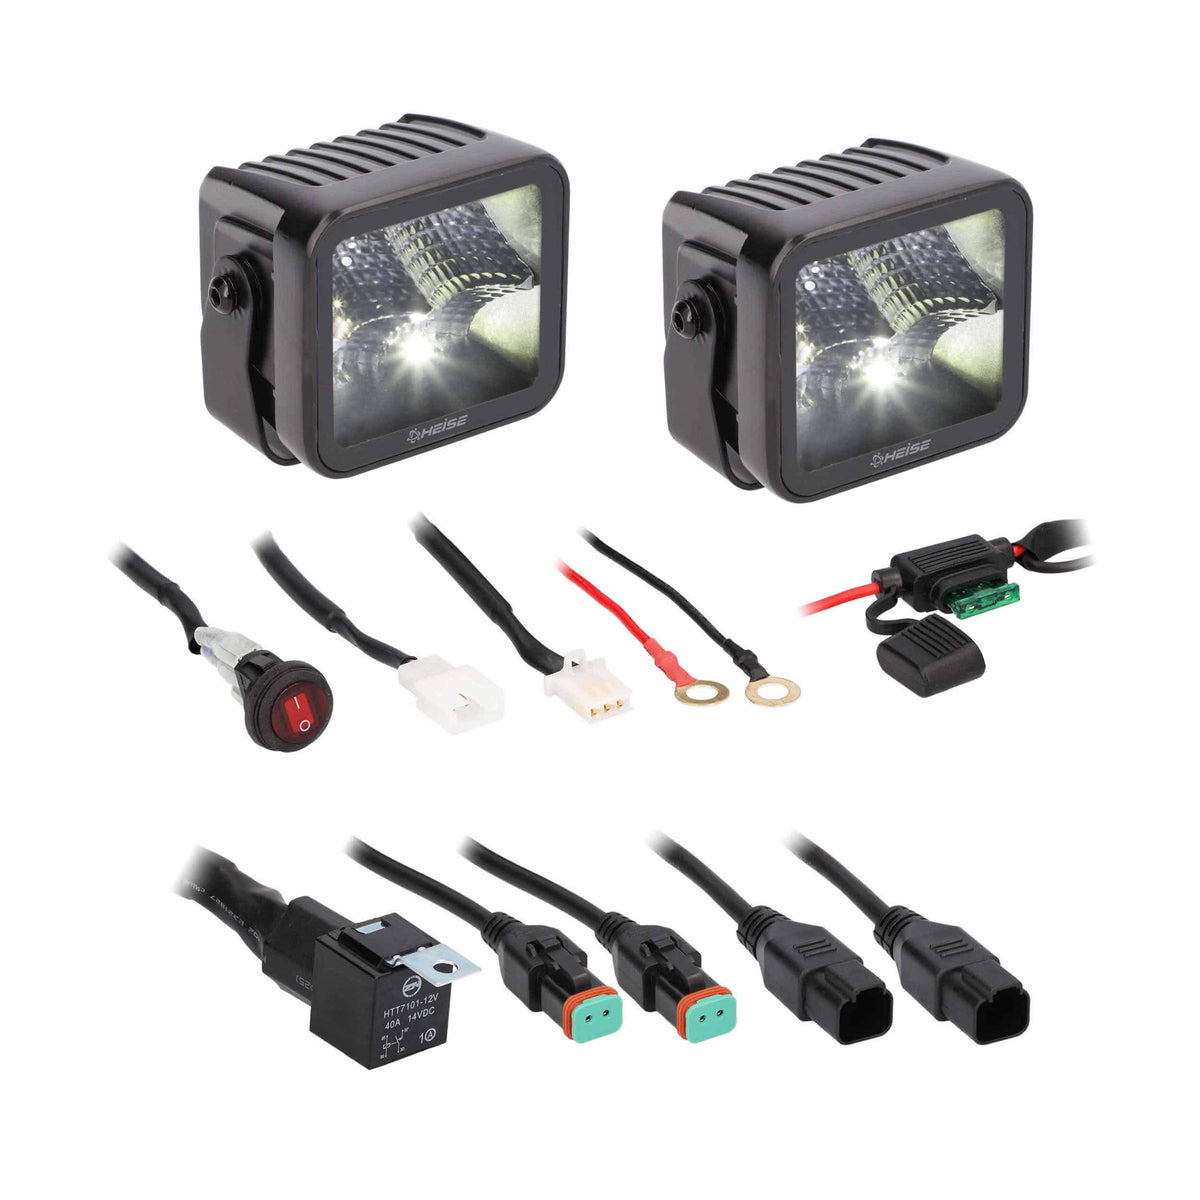 Universal - Blackout 3&quot; - 4 LED Flood Cube - 2 Pack-Lighting Pods-Heise-Black Market UTV